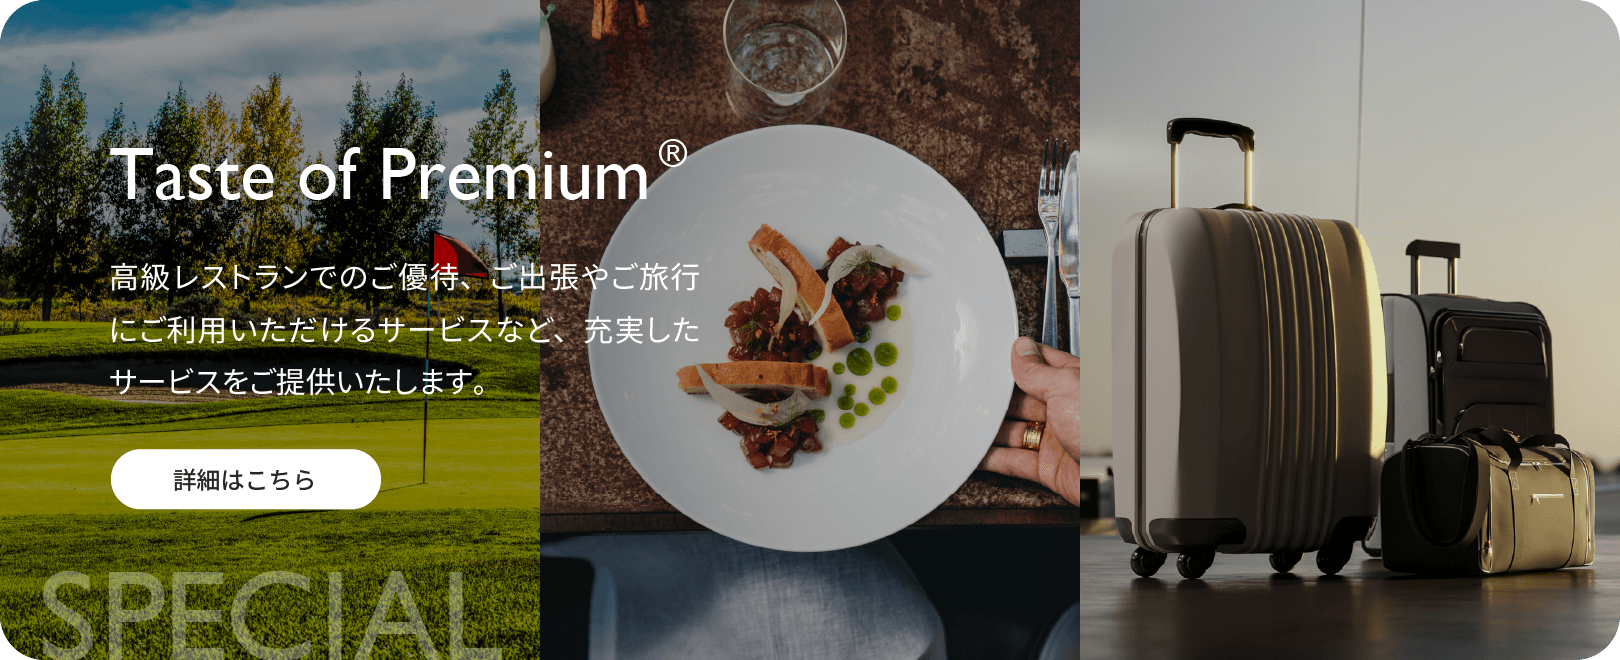 Taste of Premium® 高級レストランでのご優待、ご出張やご旅行にご利用いただけるサービスなど、充実したサービスをご提供いたします。詳細はこちら